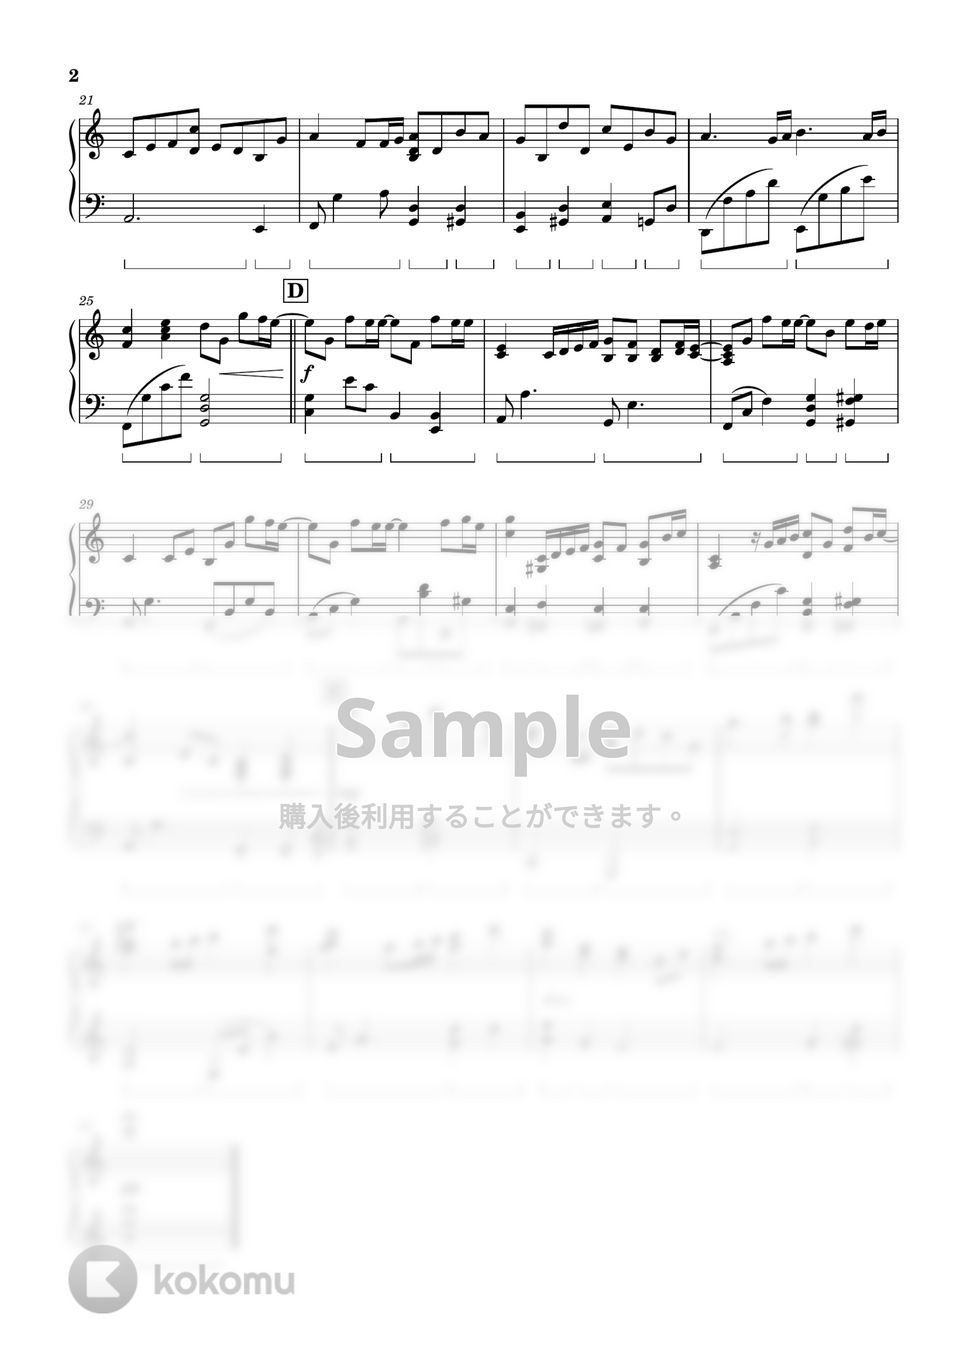 ドラマ「ミステリと言う勿れ」 - Back Light (Piano Solo Version) by ちゃんRINA。